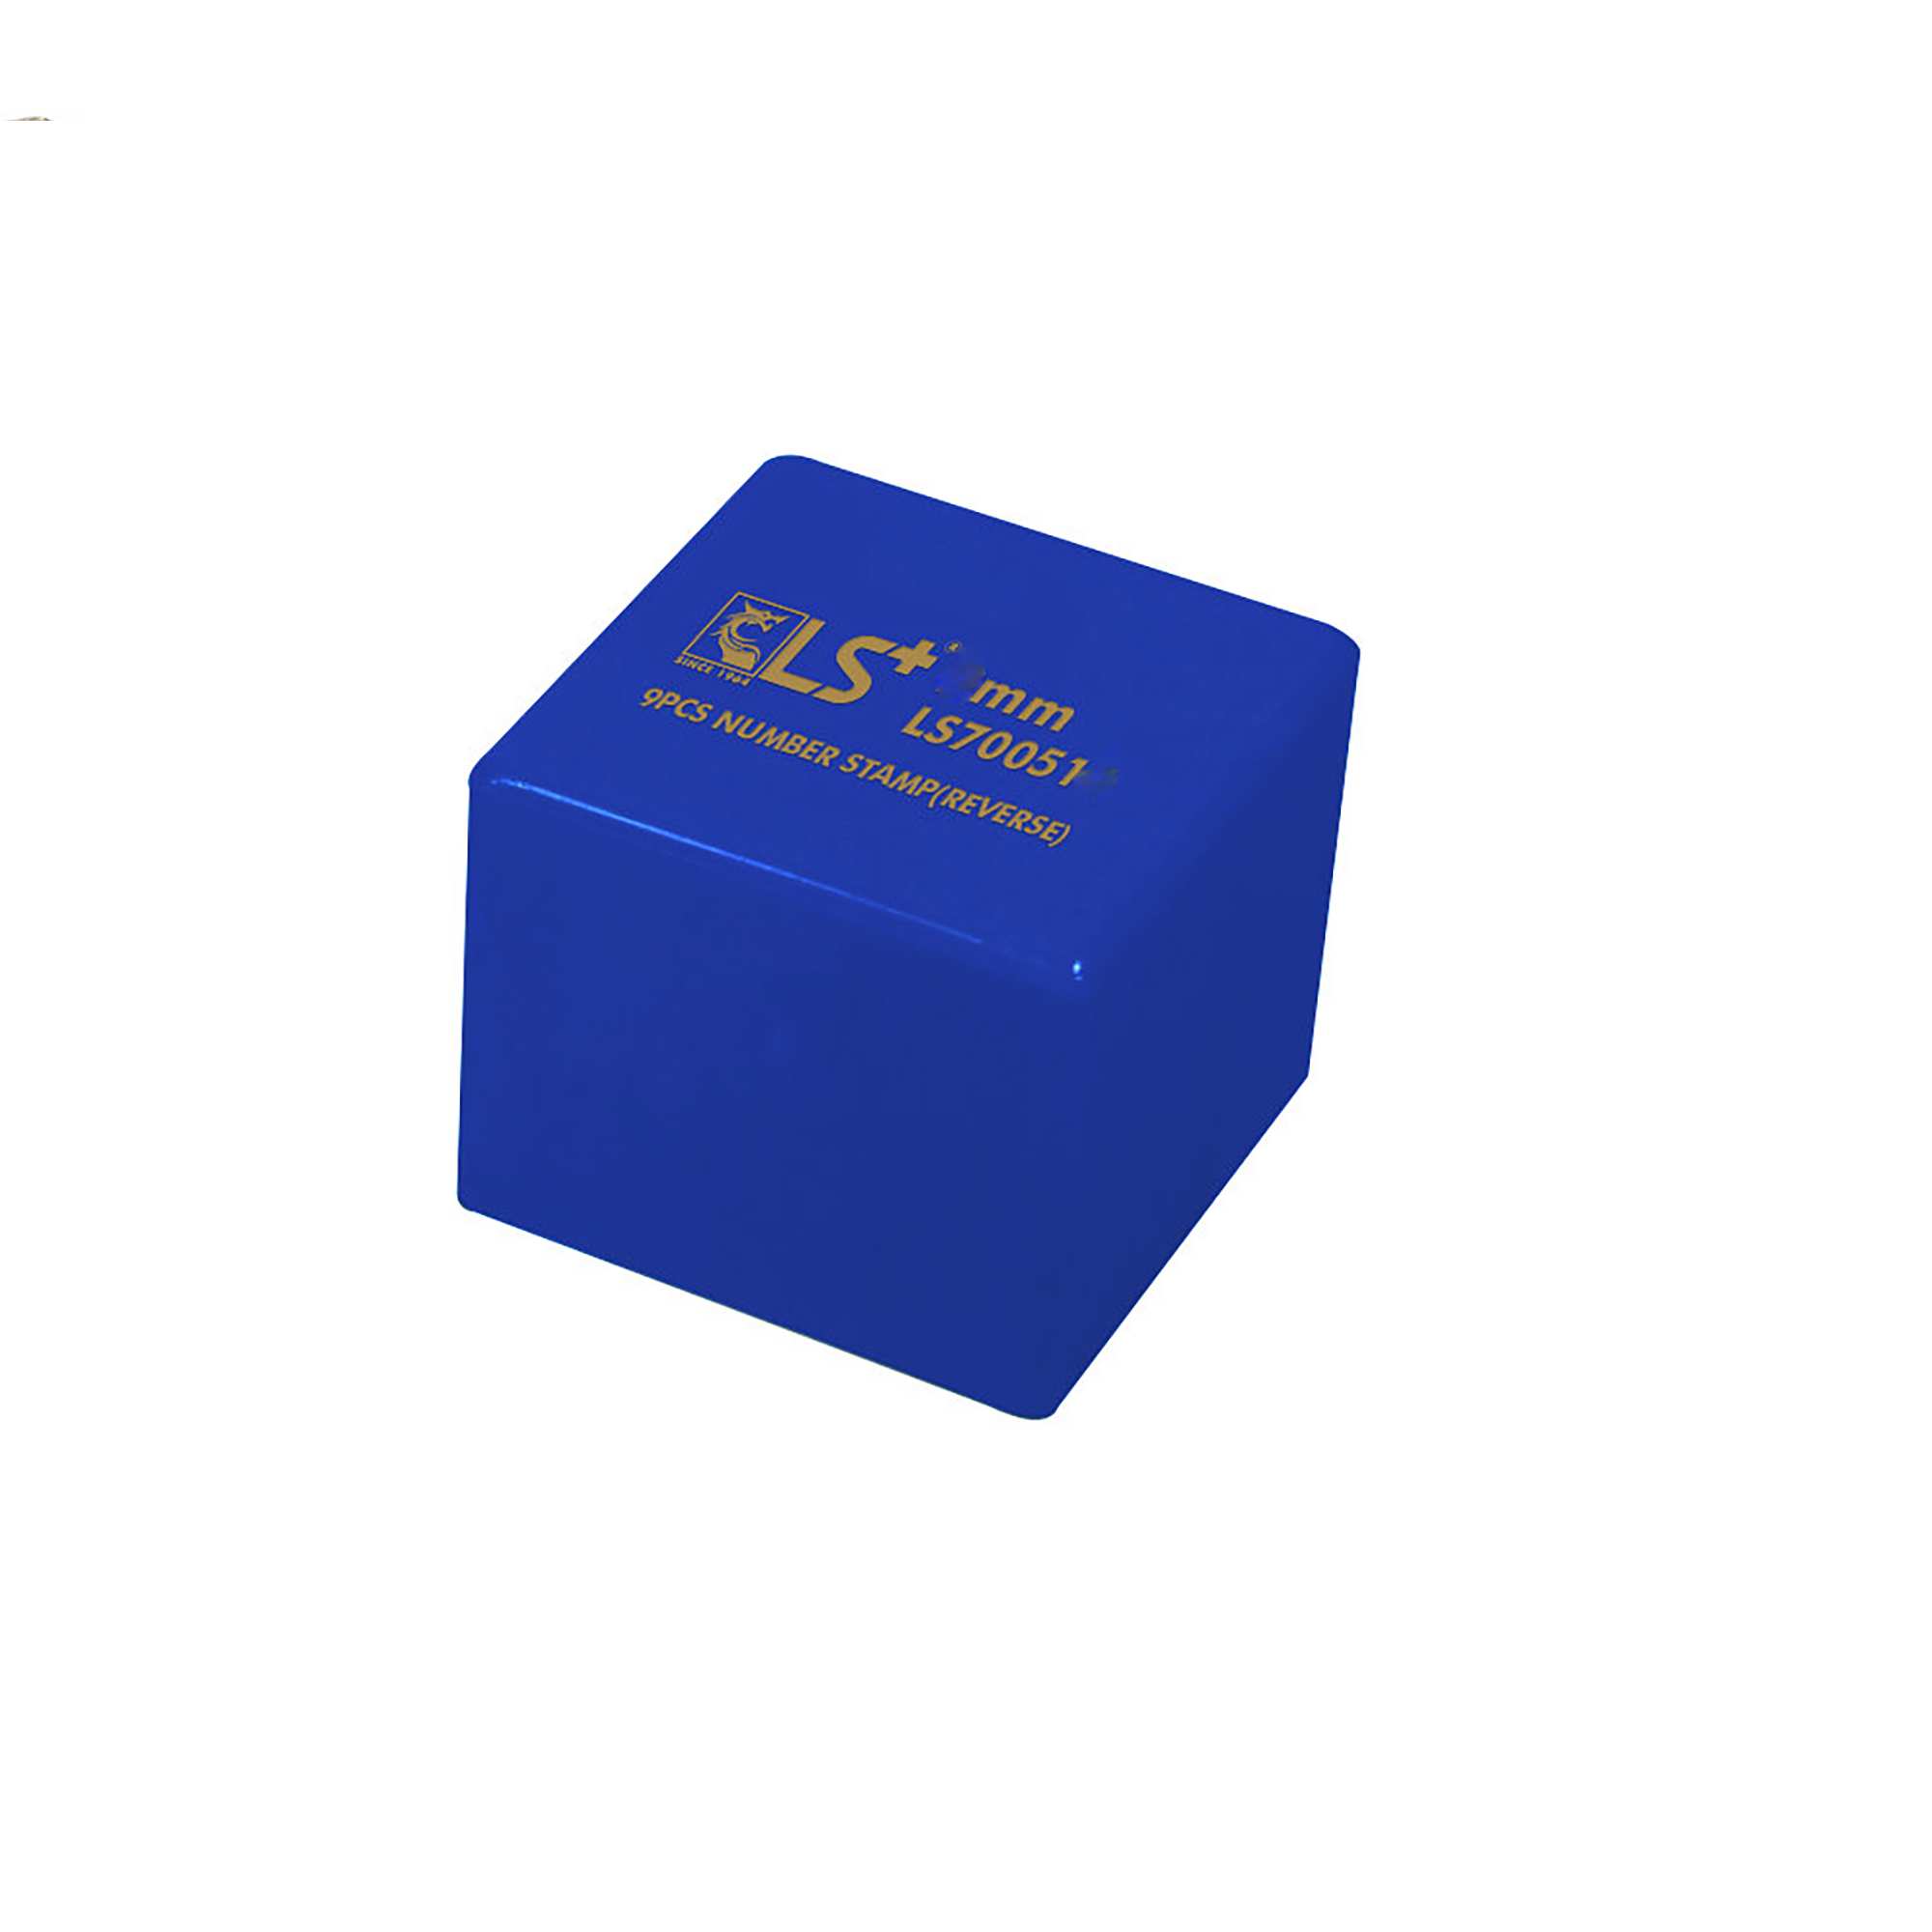 Hình ảnh 9 của mặt hàng Đóng Số Bộ 9pcs Ngược 10mm LS - hộp xanh